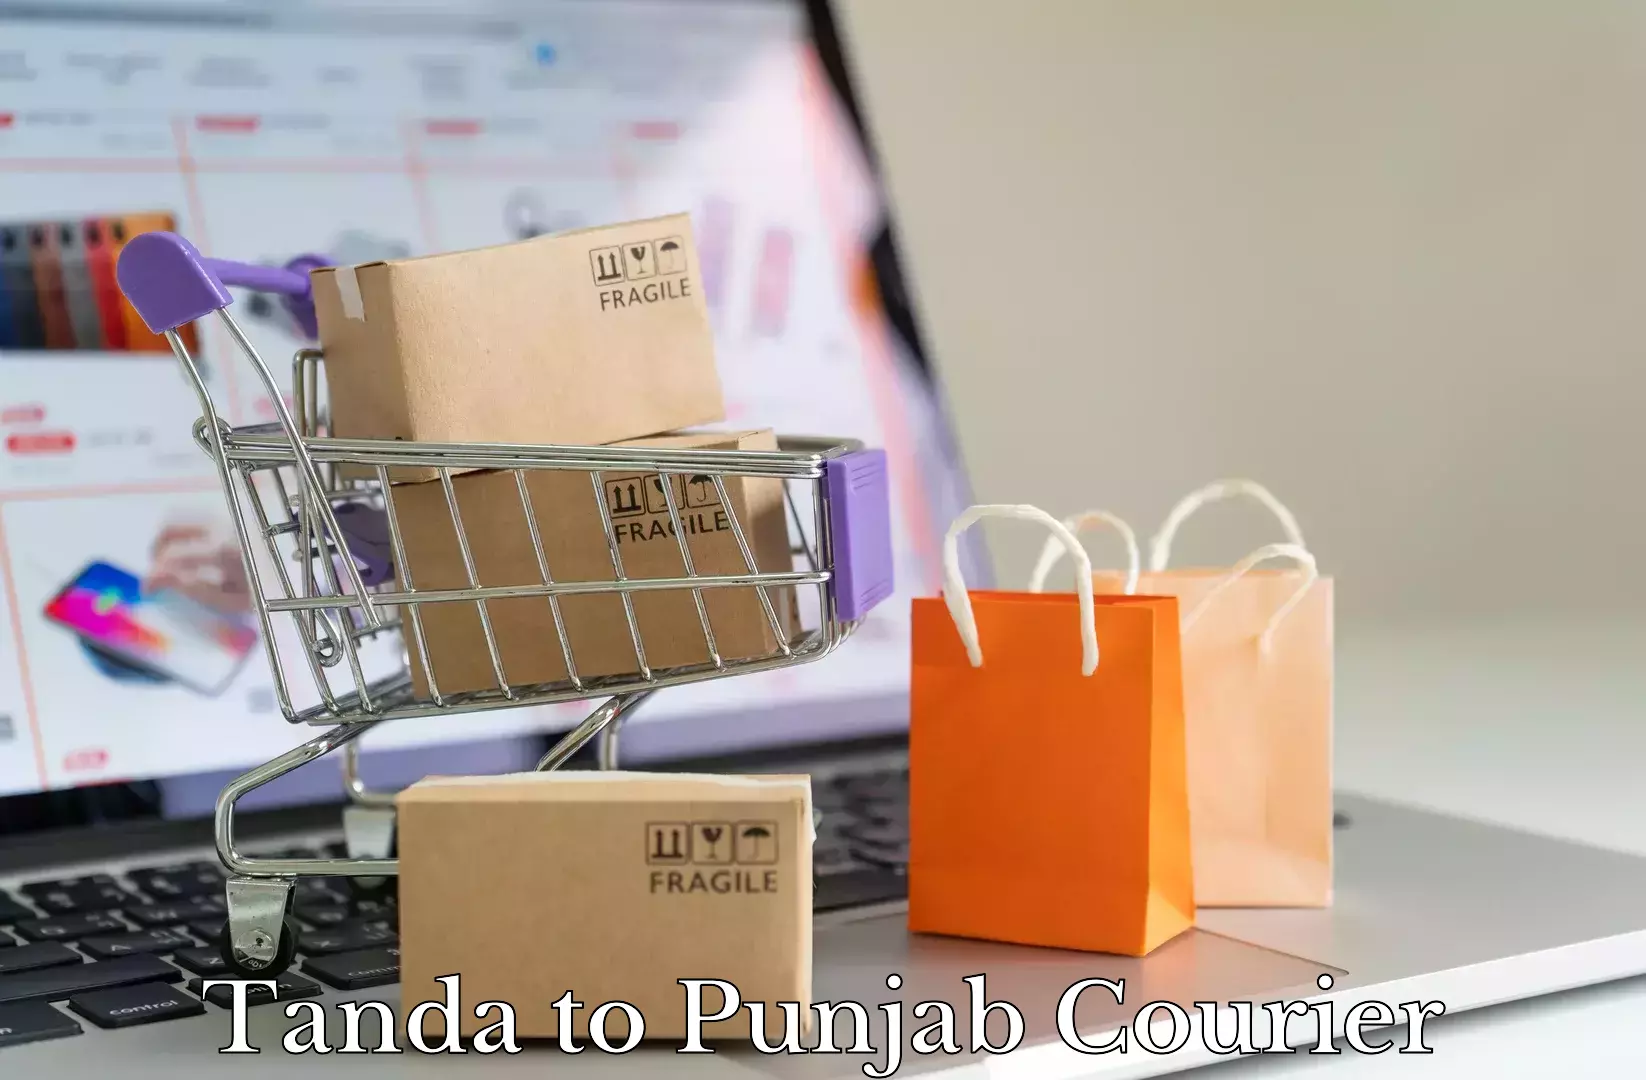 Furniture moving plans in Tanda to Punjab